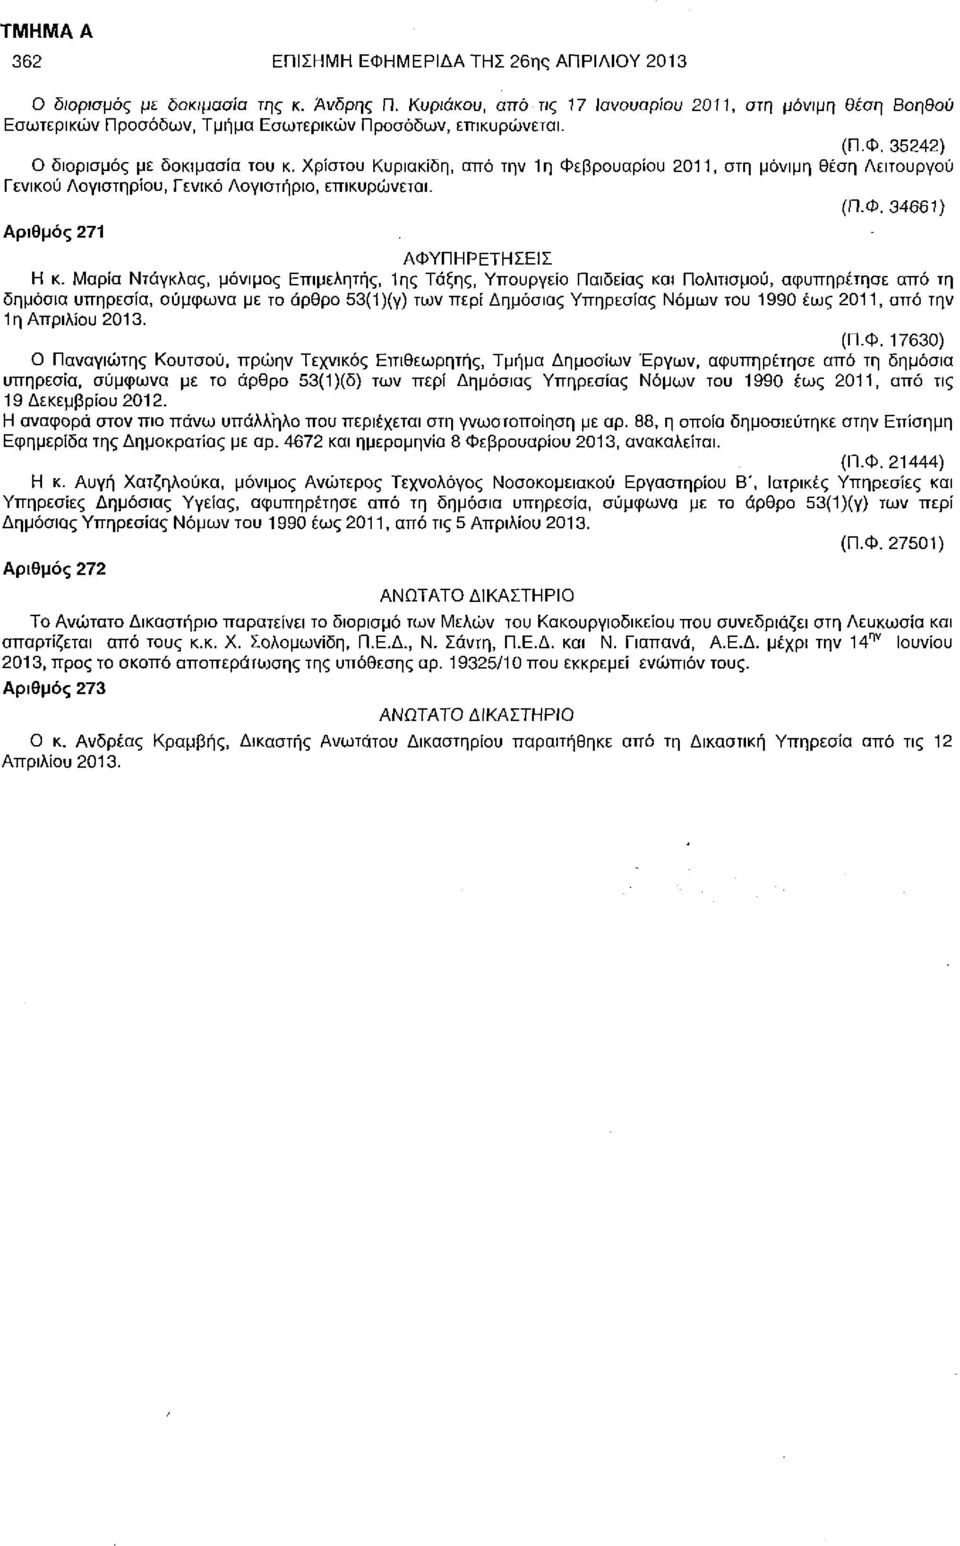 Χρίστου Κυριακίδη, από την 1η Φεβρουαρίου 2011, στη μόνιμη θέση Λειτουργού Γενικού Λογιστηρίου, Γενικό Λογιστήριο, επικυρώνεται. (Π.Φ. 34661) Αριθμός 271 ΑΦΥΠΗΡΕΤΗΣΕΙΣ Η κ.